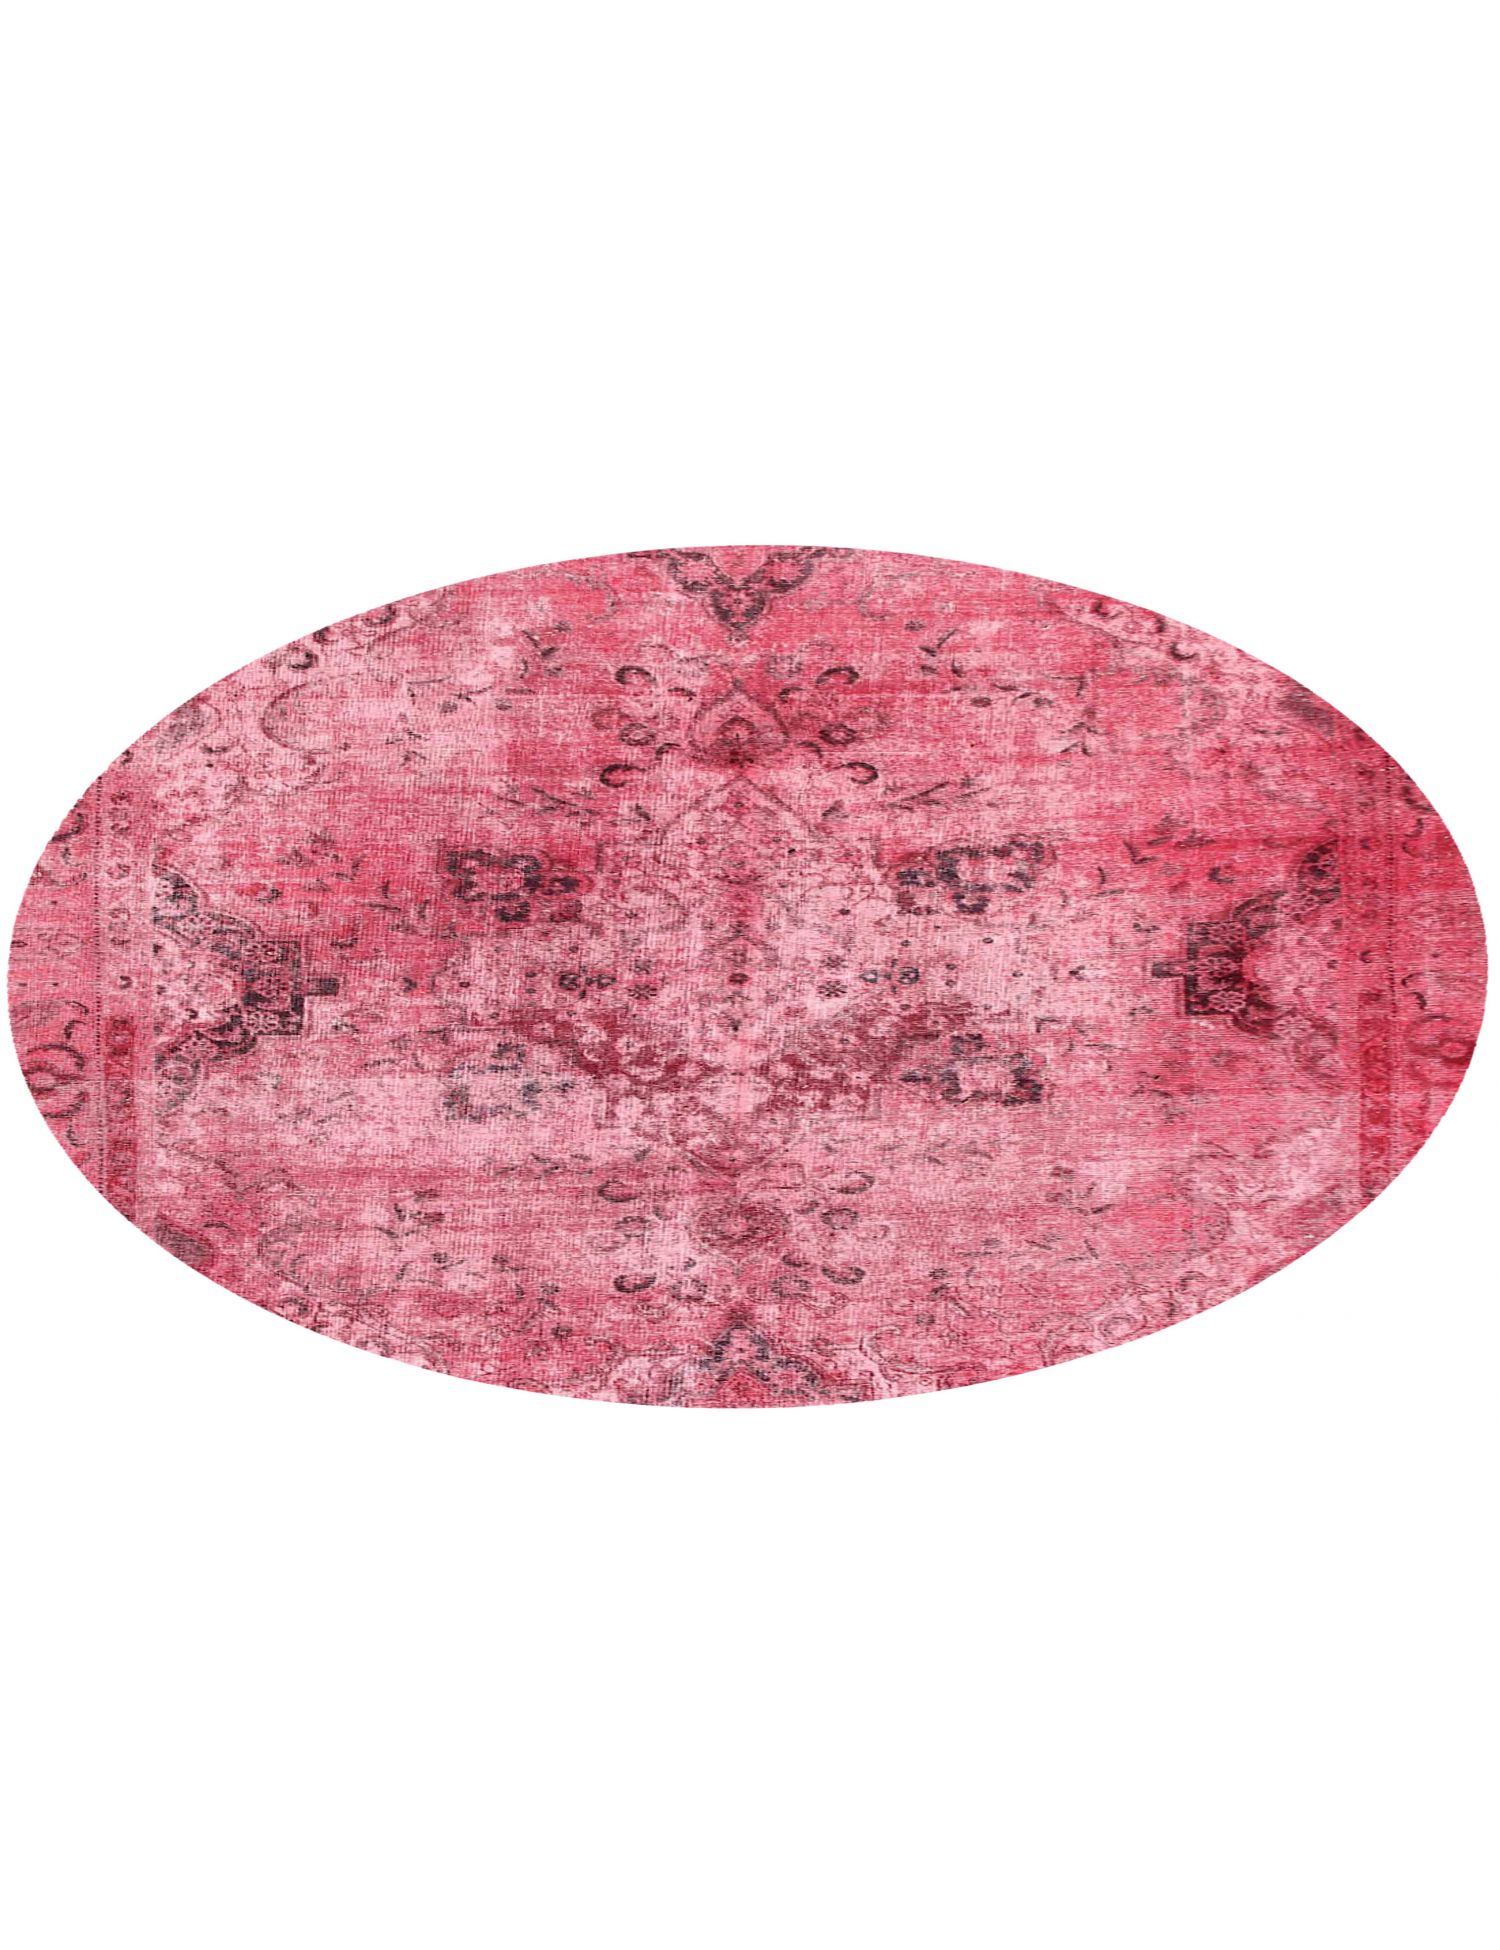 Persisk Vintagetæppe  rød <br/>255 x 255 cm